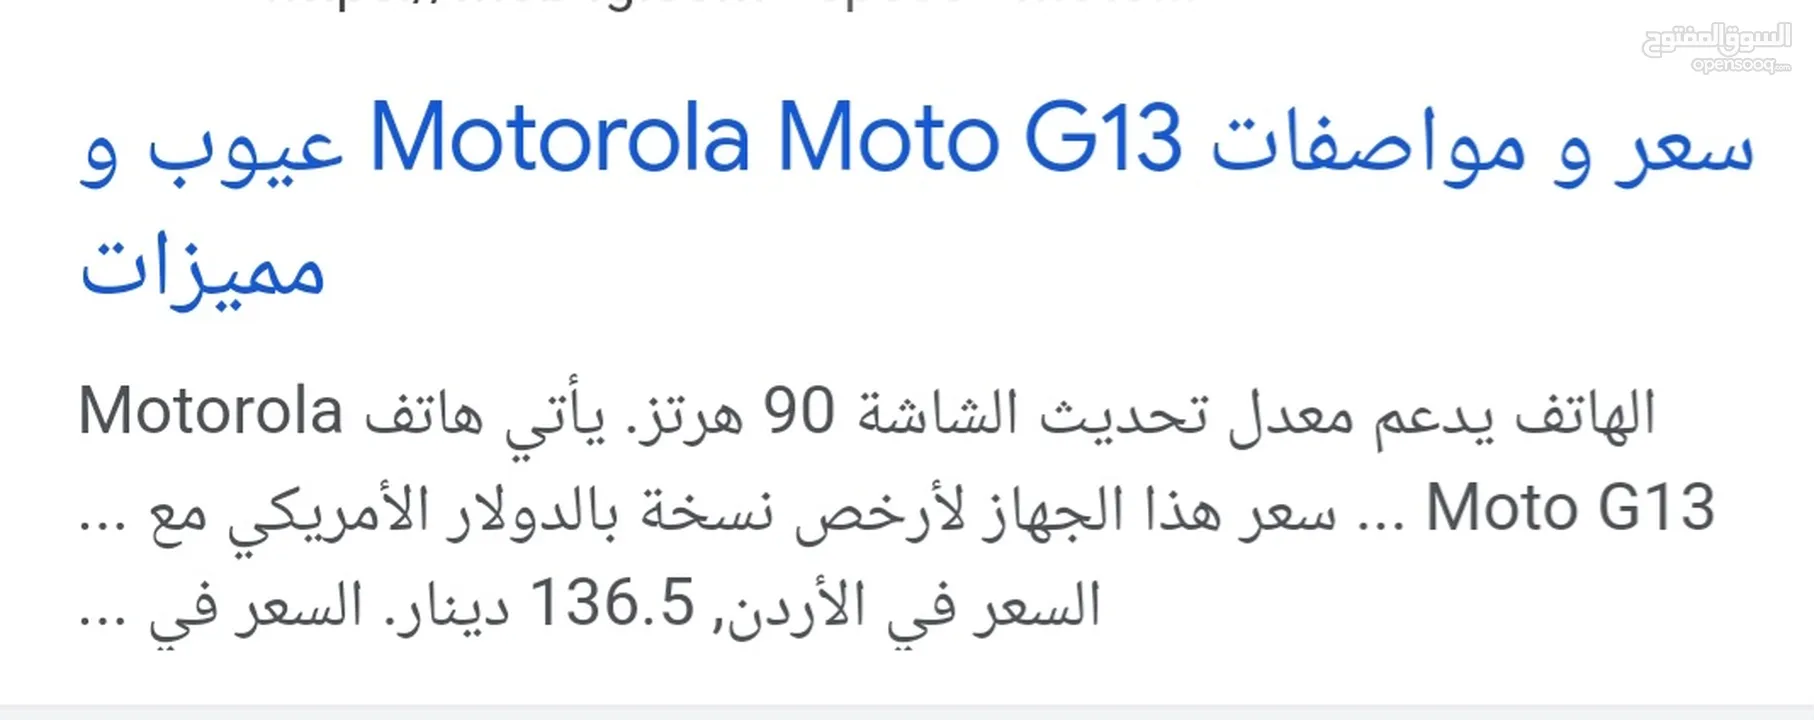 تلفون موتورولا  g13 ...5 g 128